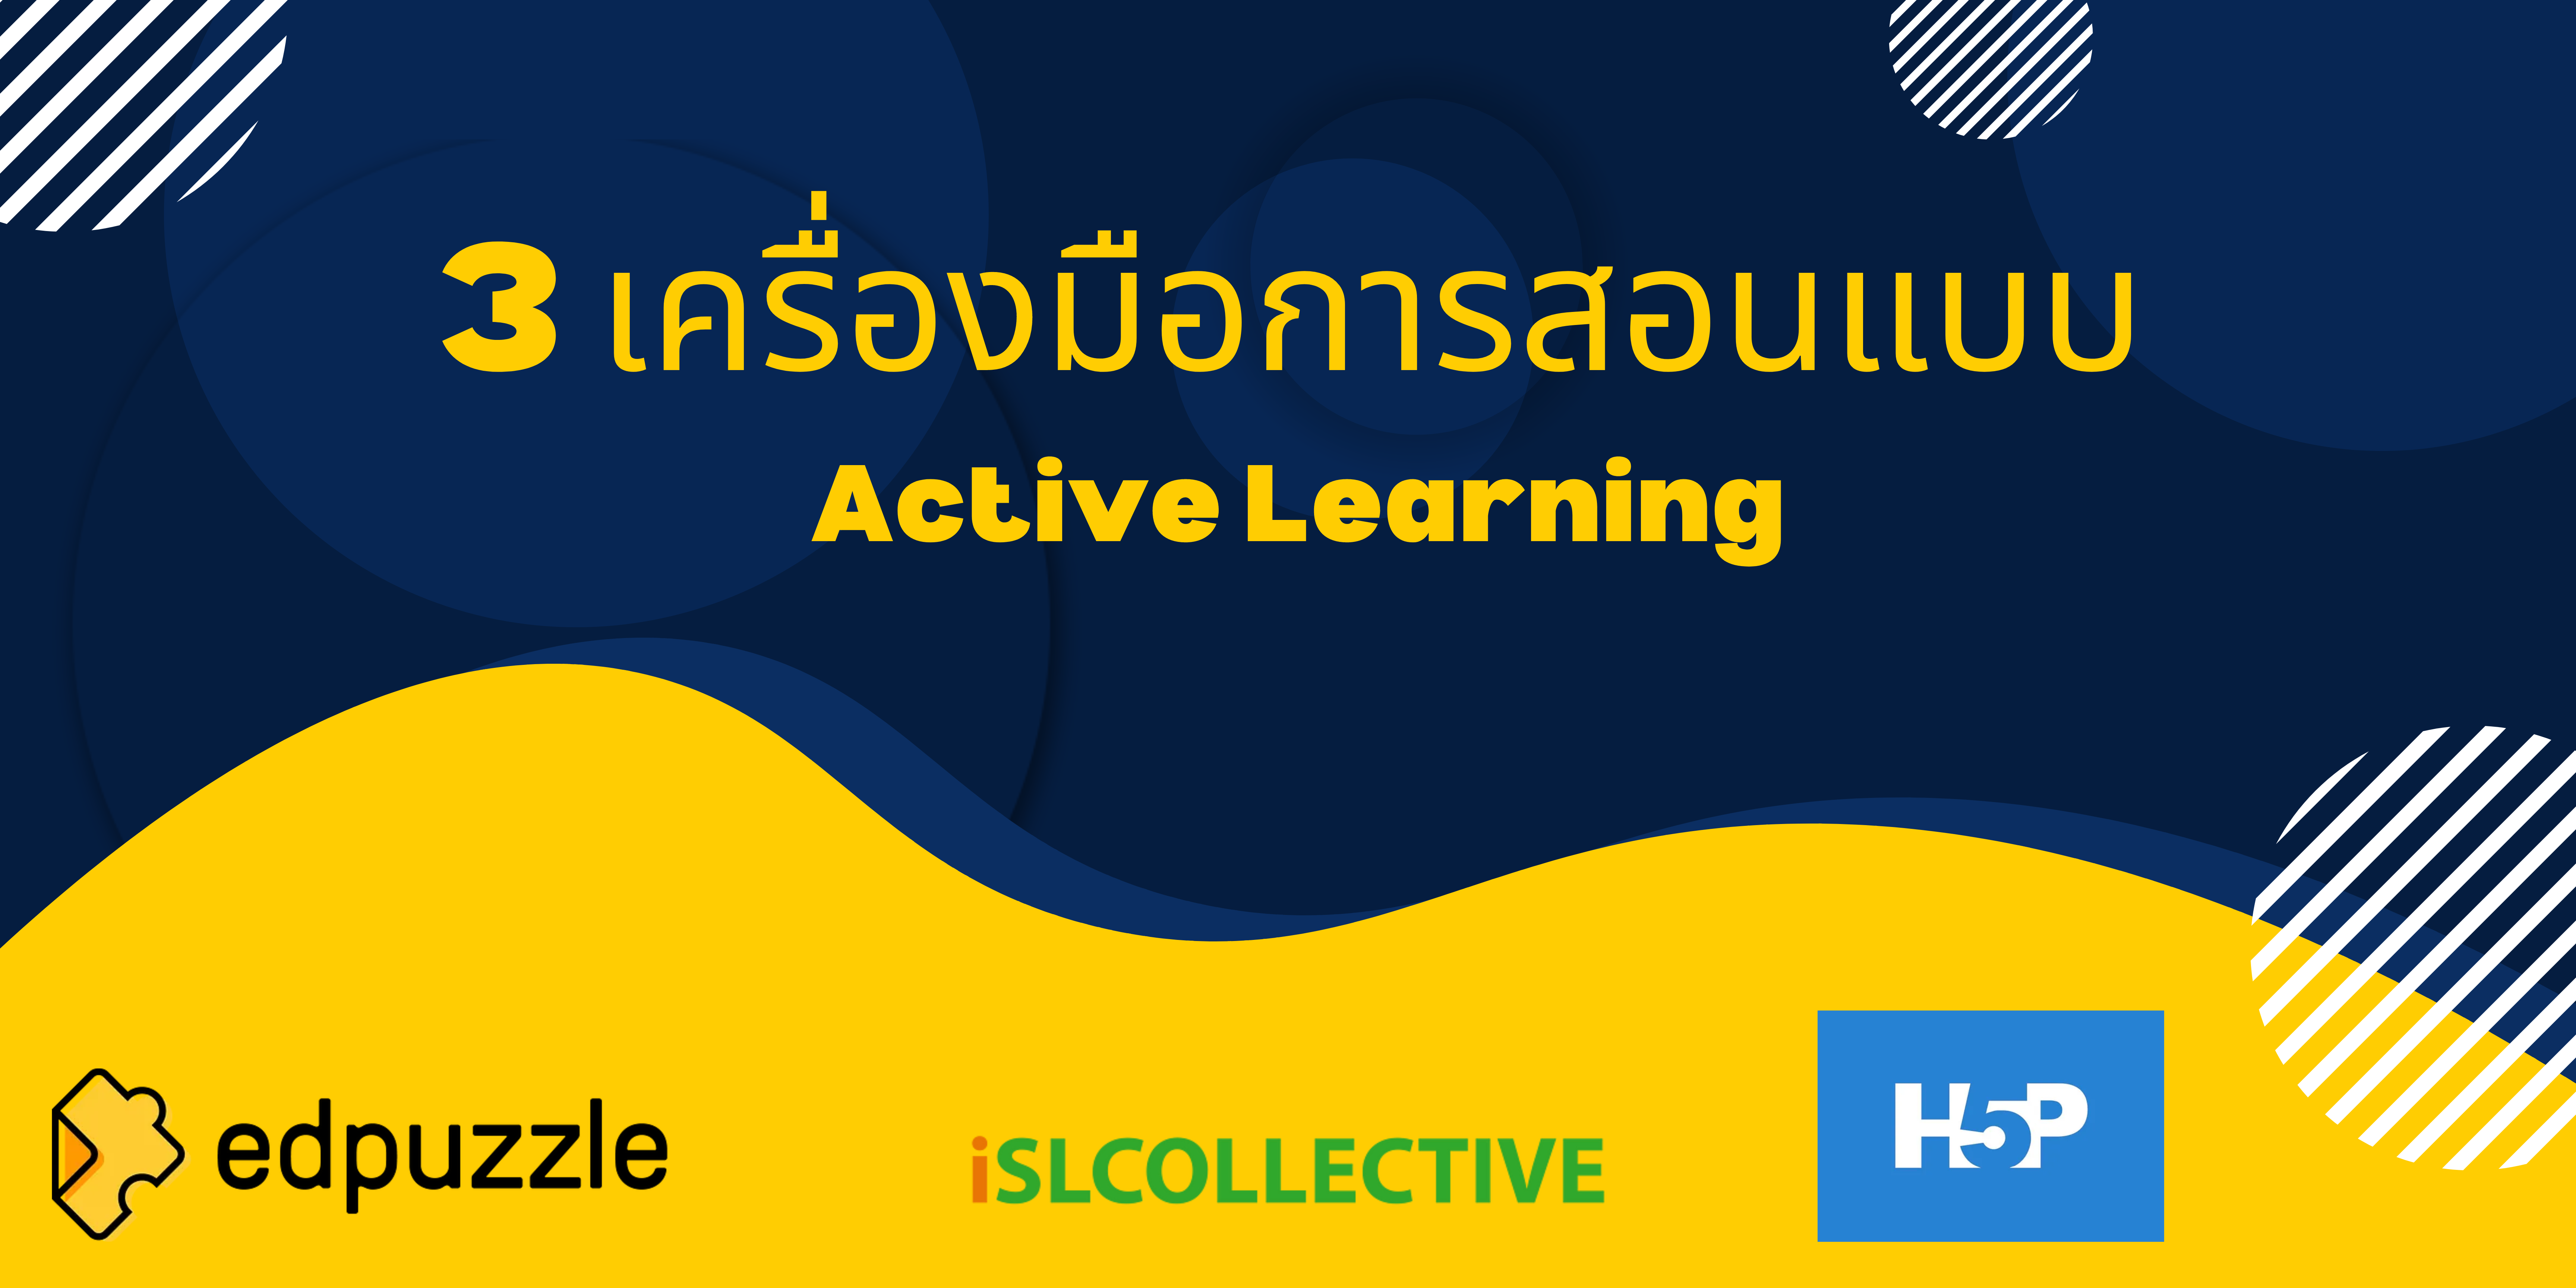 3 เครื่องมือการสอนแบบ Active Learning ผ่านวิดีโอด้วย Digital Literacy Base Learning